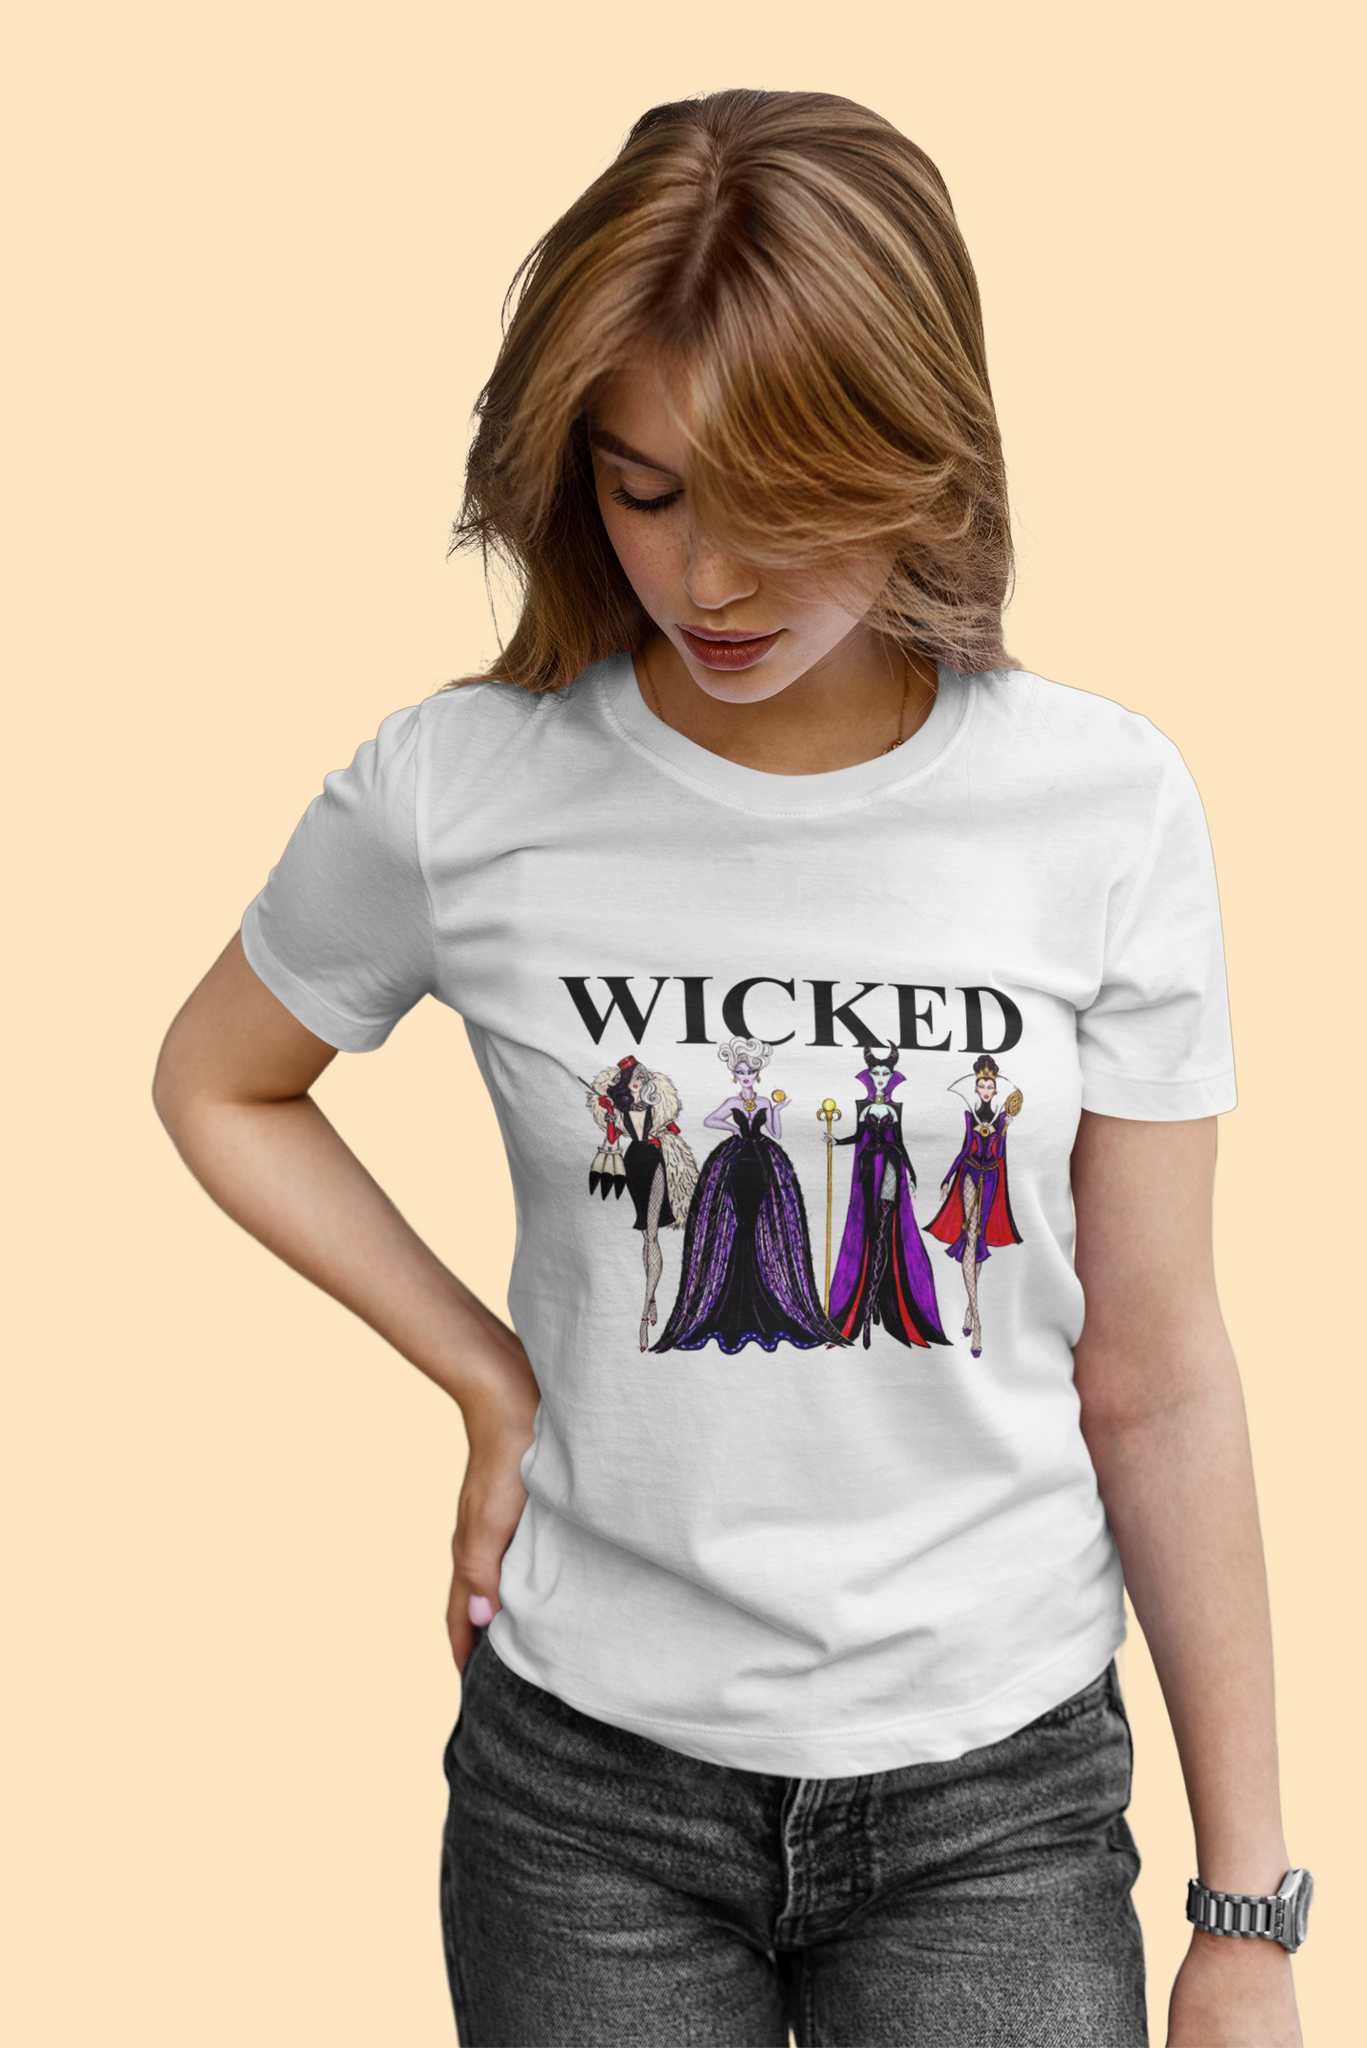 Disney Maleficent T Shirt, The Evil Queen Ursula Maleficent T Shirt, Wicked Tshirt, Disney Villains Shirt